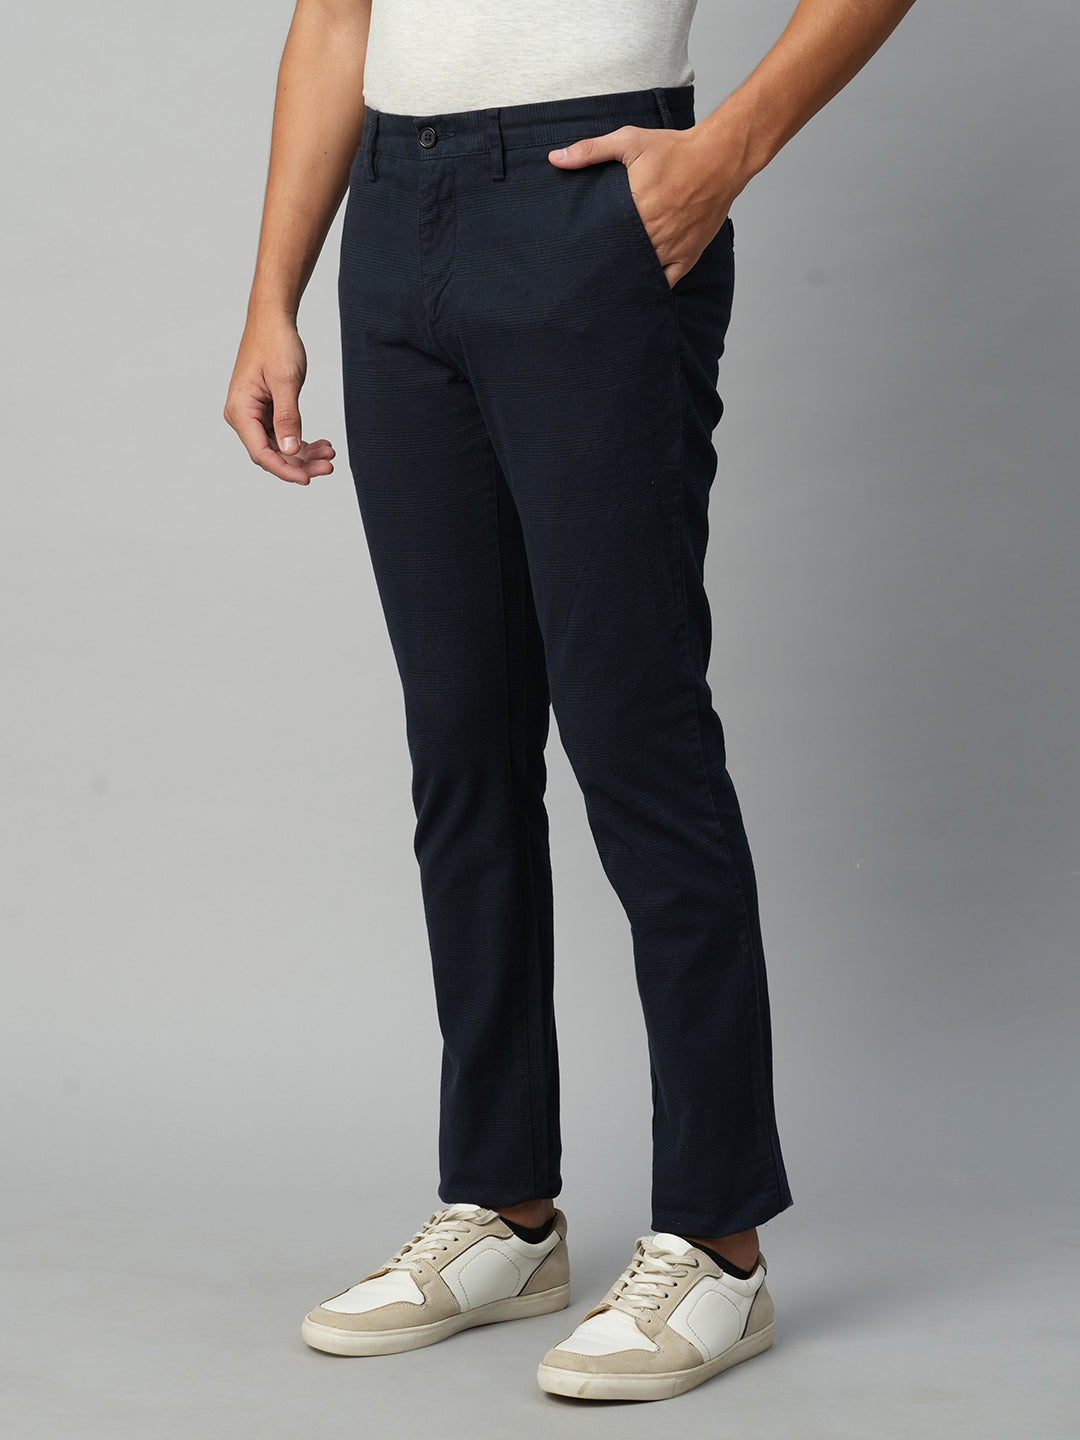 Men's Cotton Spandex Navy Slim Fit Pant